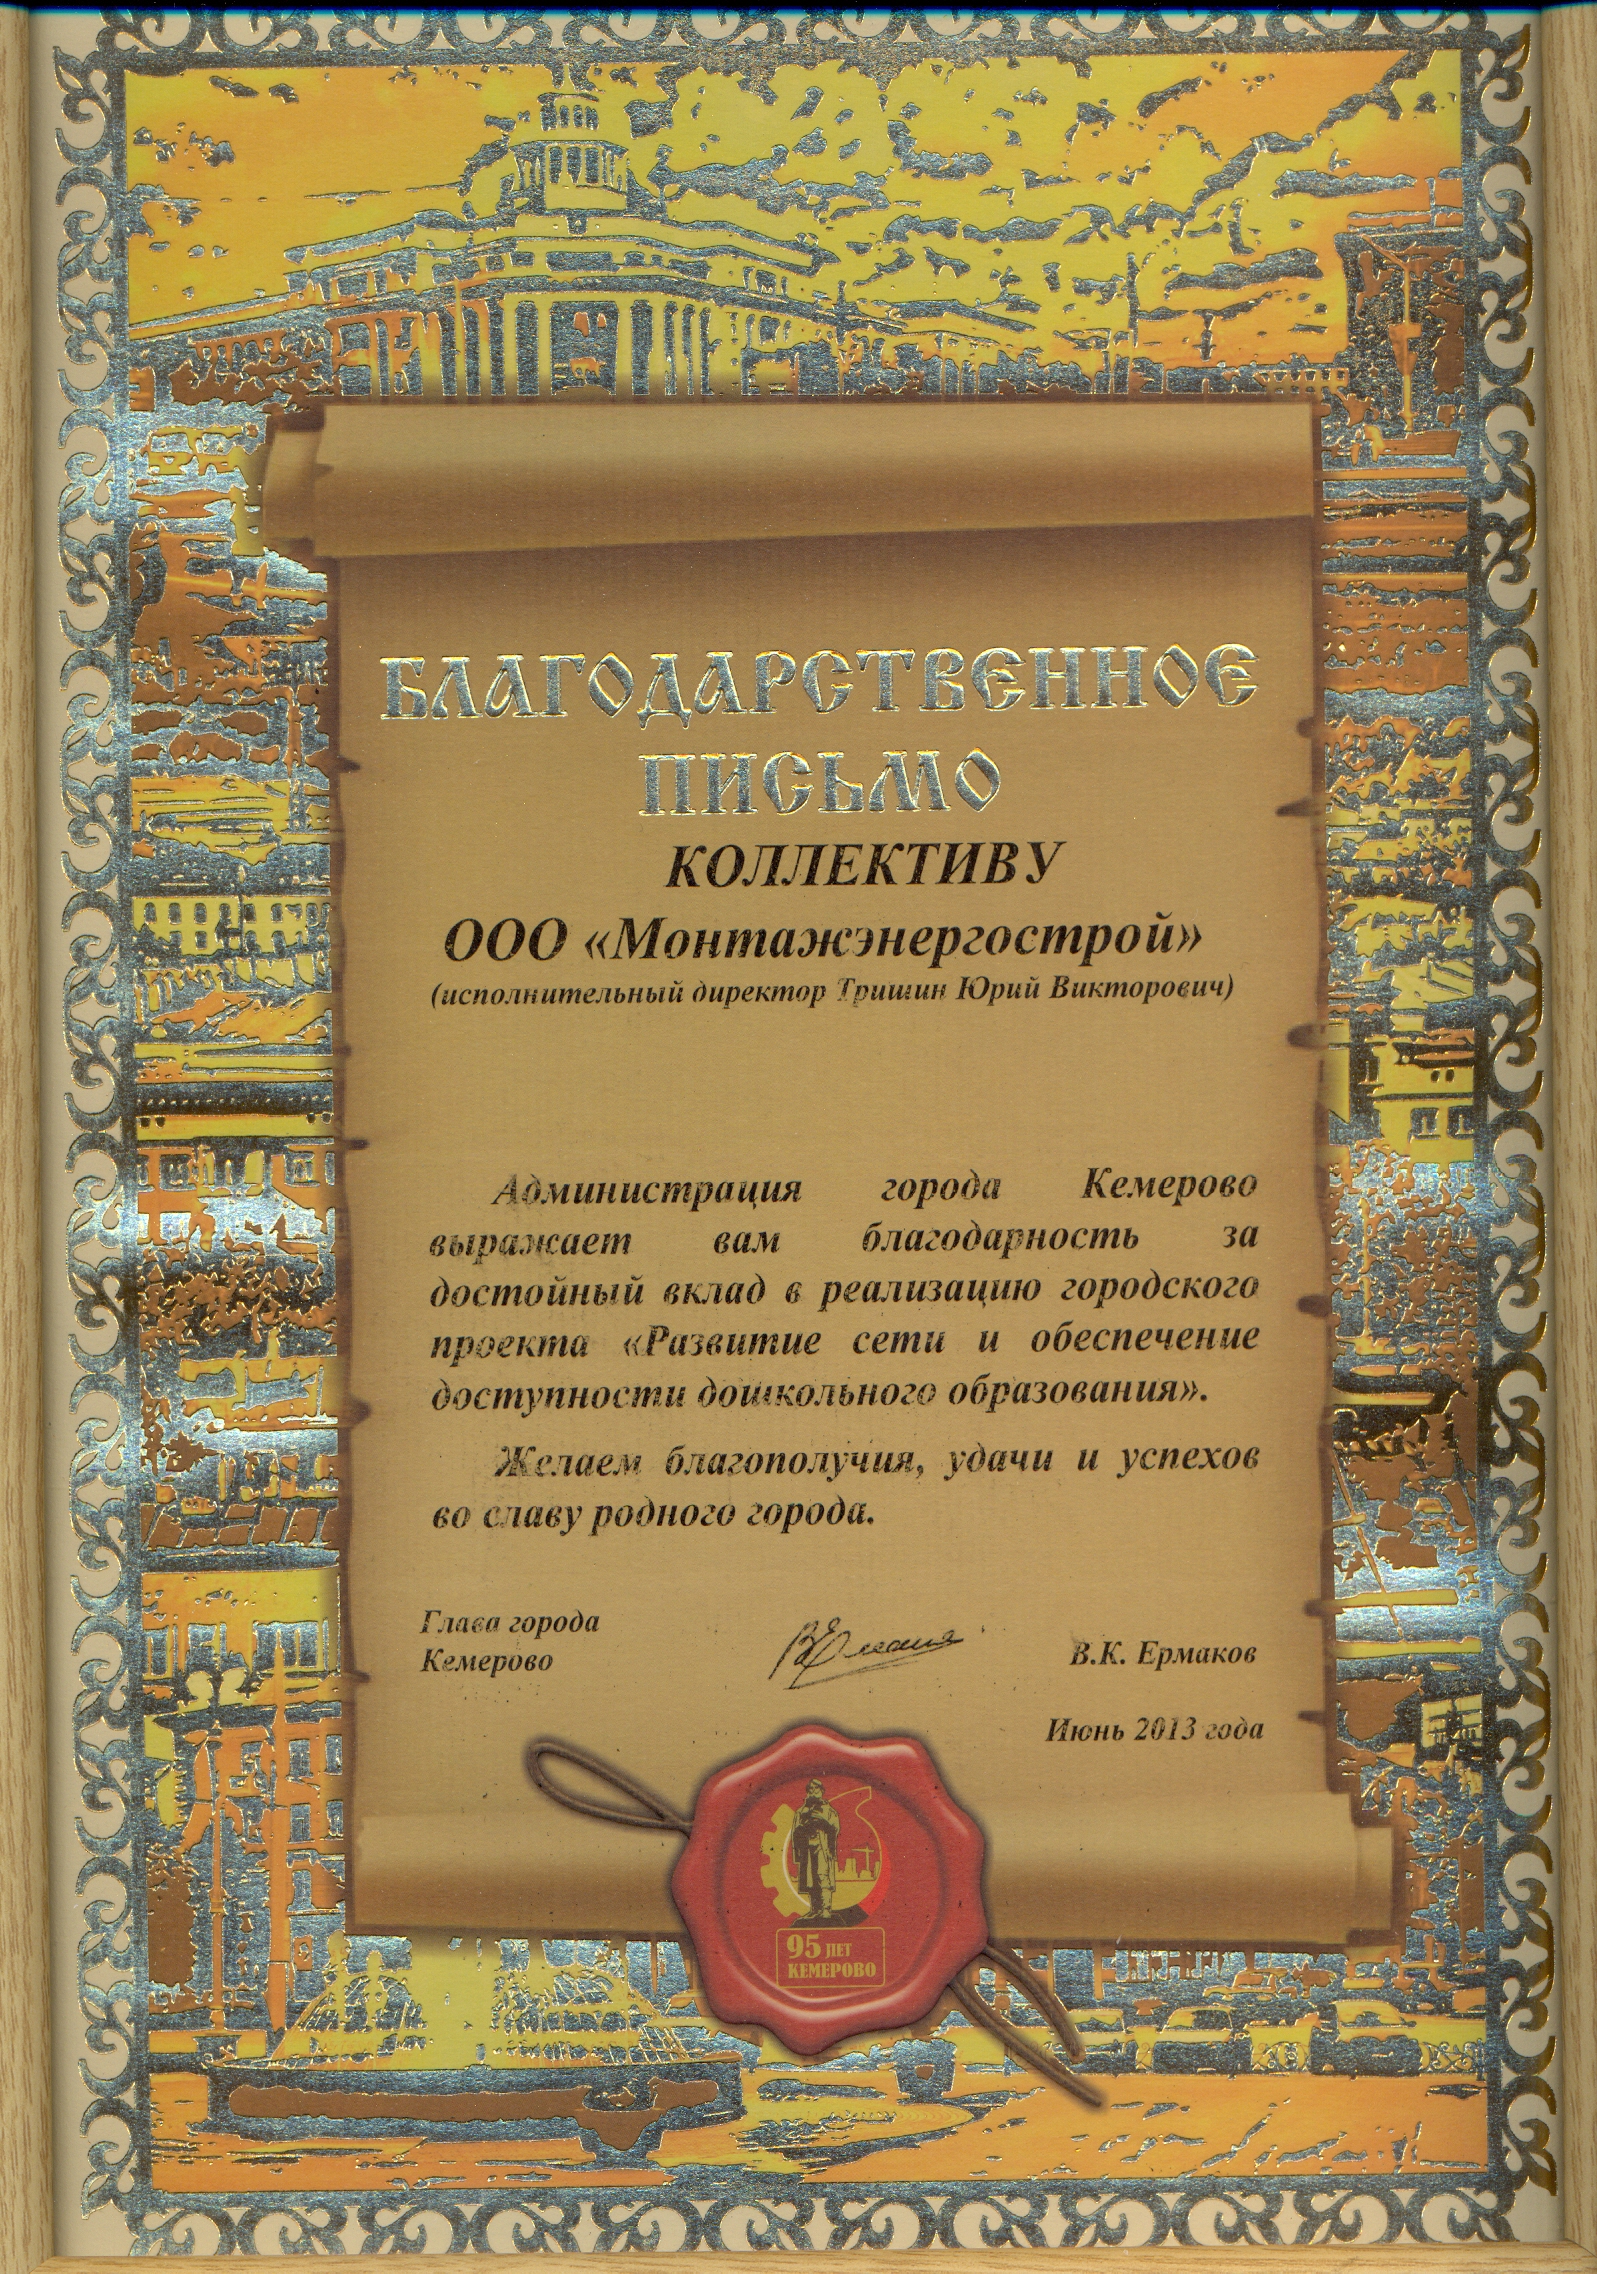 Благодарственное письмо от Администрации г. Кемерово (июнь 2013 г.)